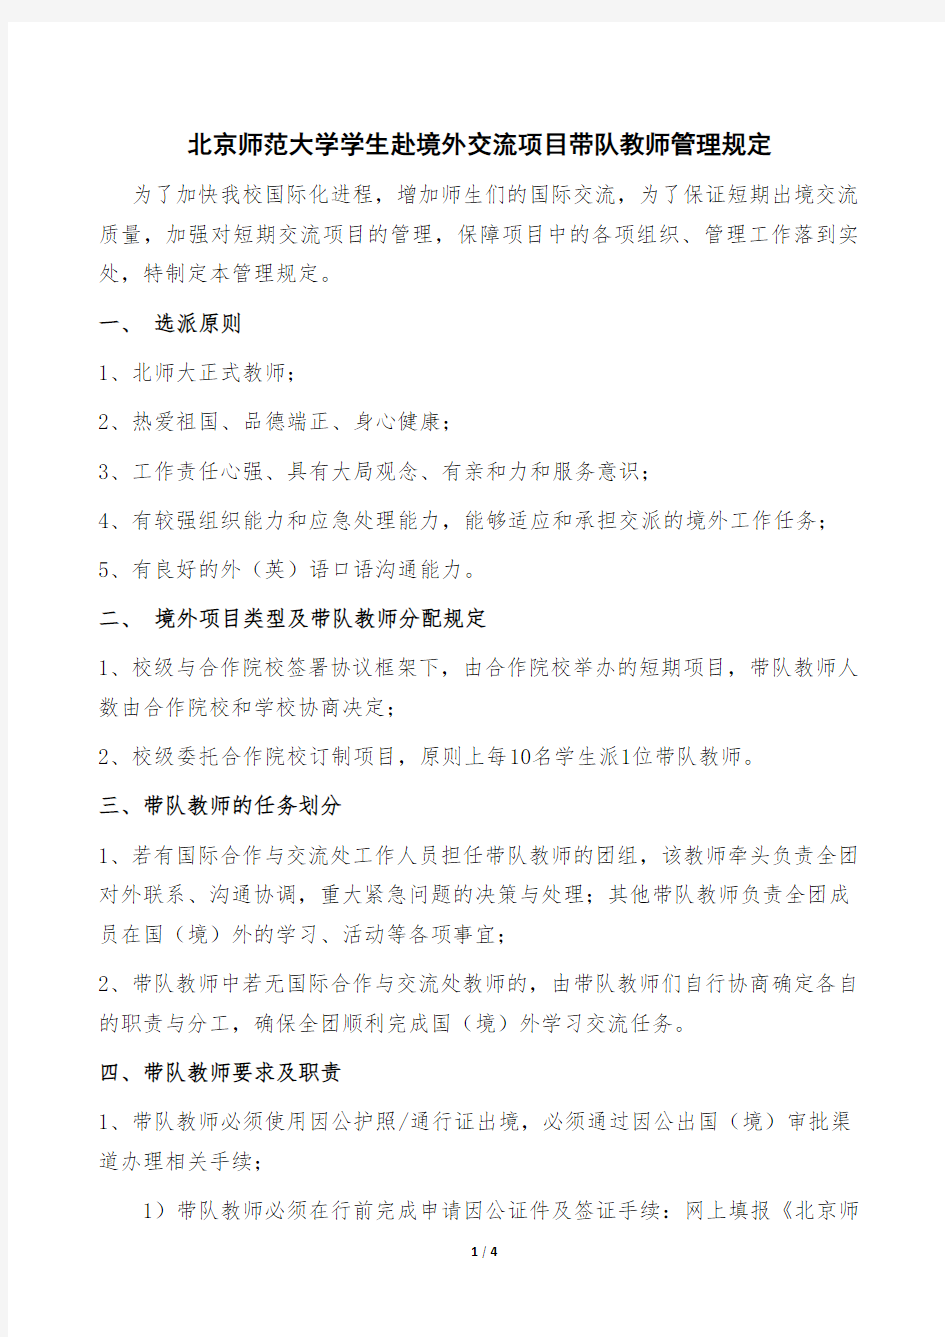 北京师范大学学生赴境外交流项目带队教师管理规定